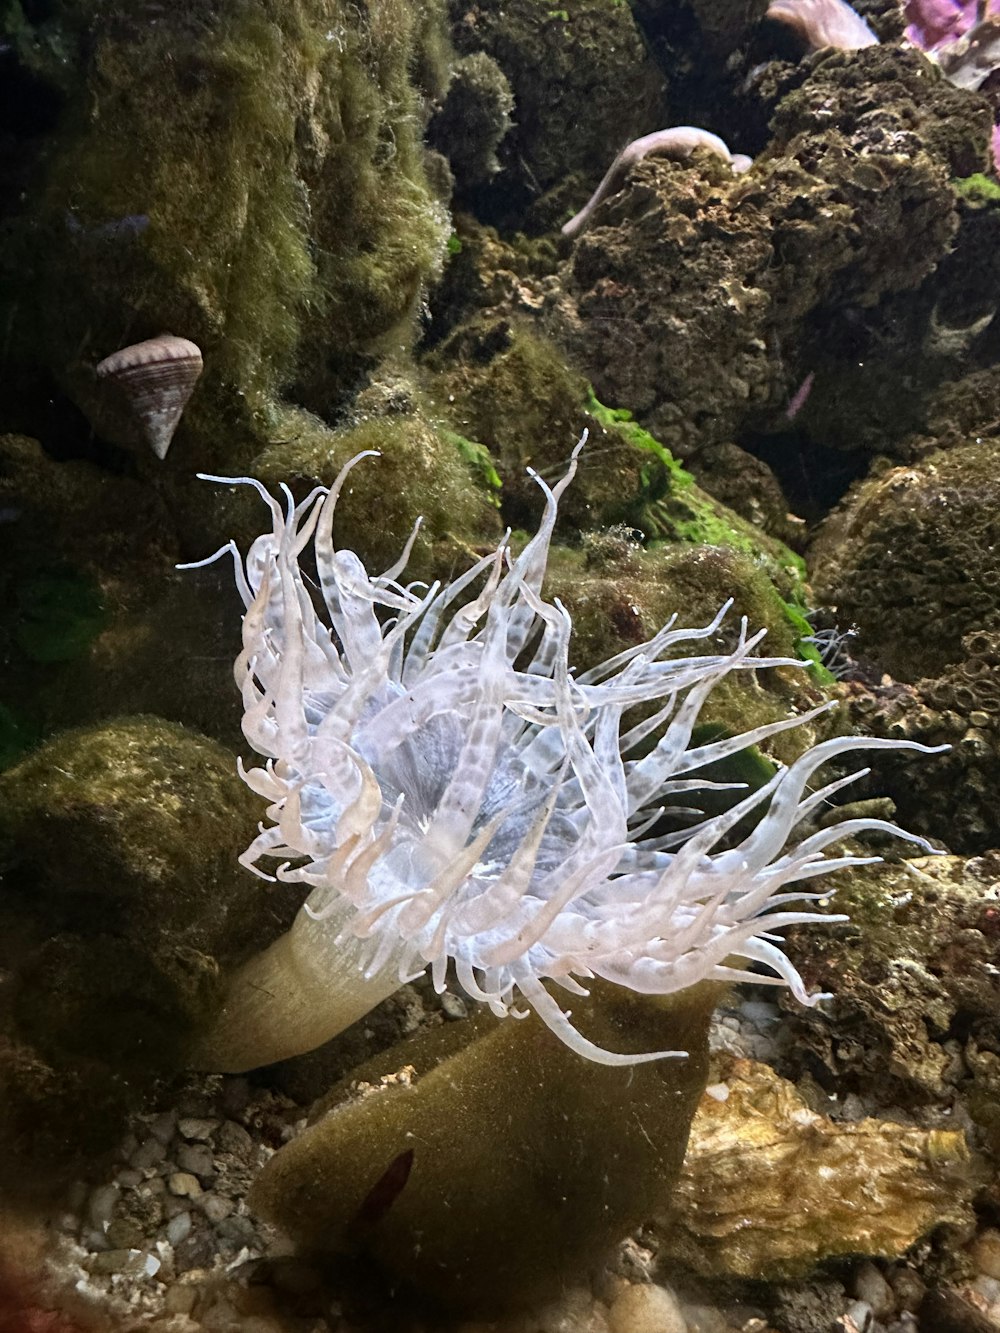 a white sea anemone in an aquarium